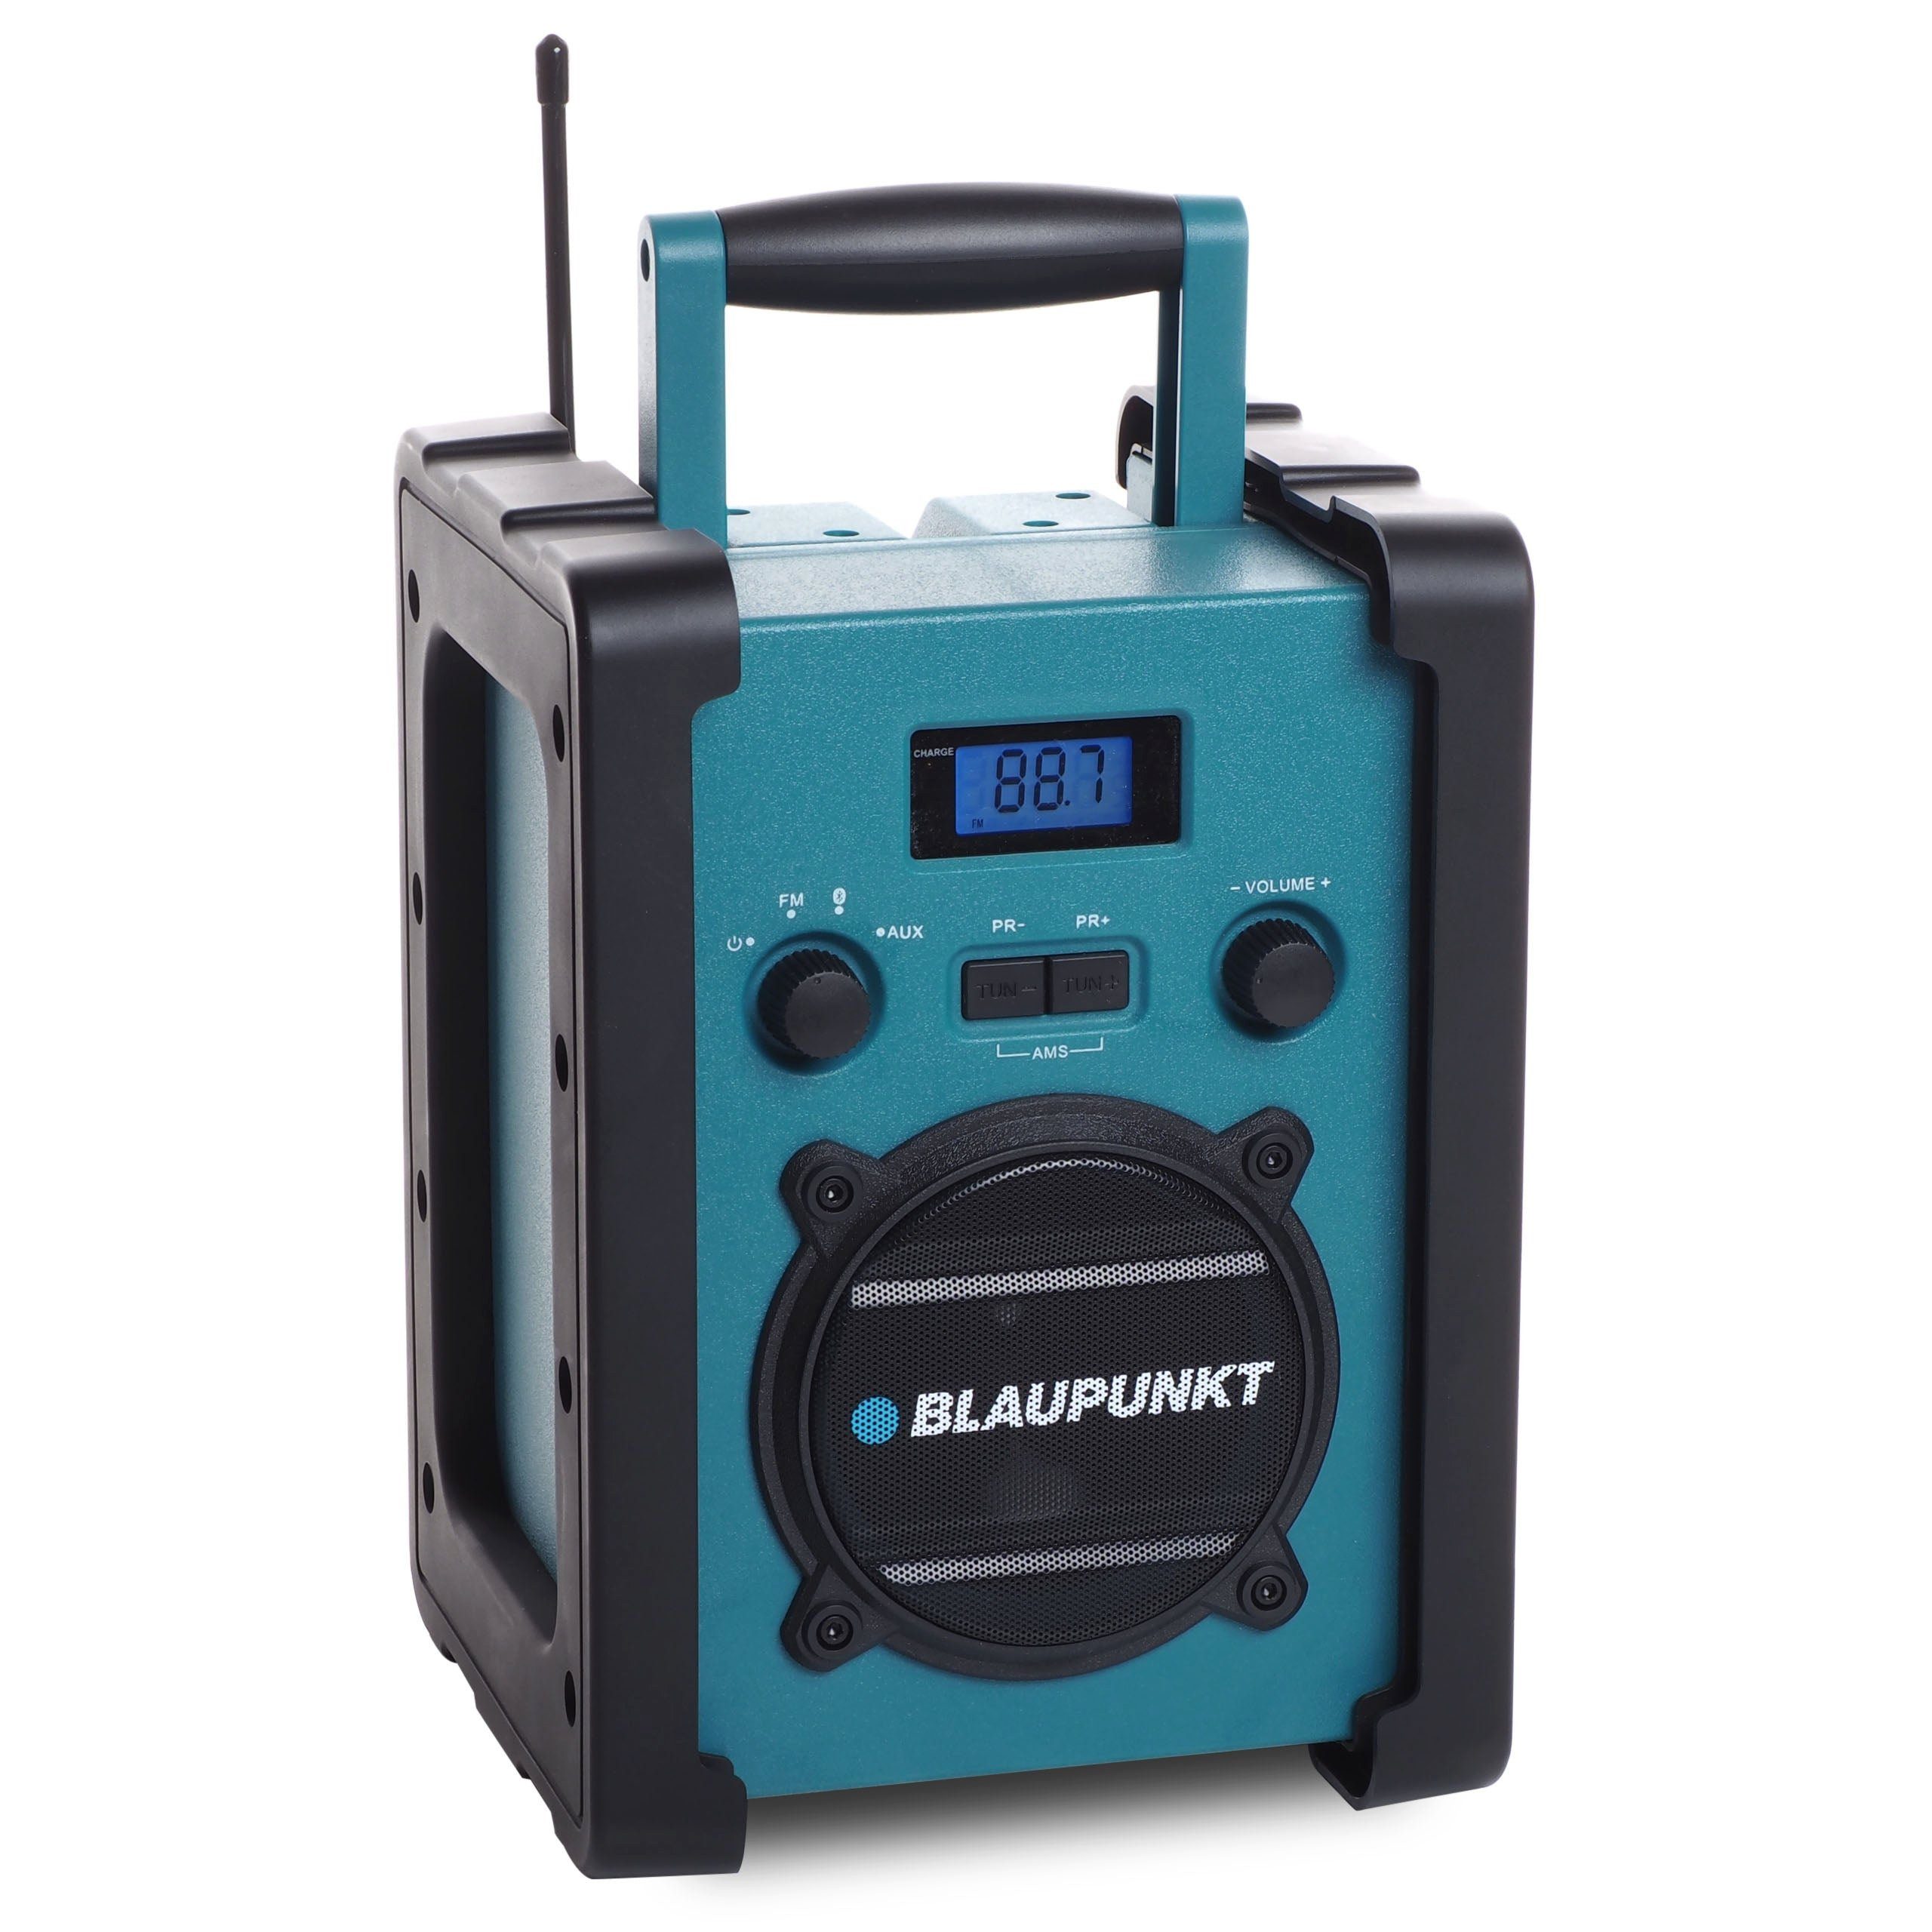 Blaupunkt BSR 20, Baustellenradio mit Akku, Bluetooth, AUX-IN, Schutzklasse IPX5 Baustellenradio (Radio (FM), 5,00 W, Bluetooth, 14 std. Laufzeit, Staub- und strahlwassergeschützt, Aux-in) Petrol